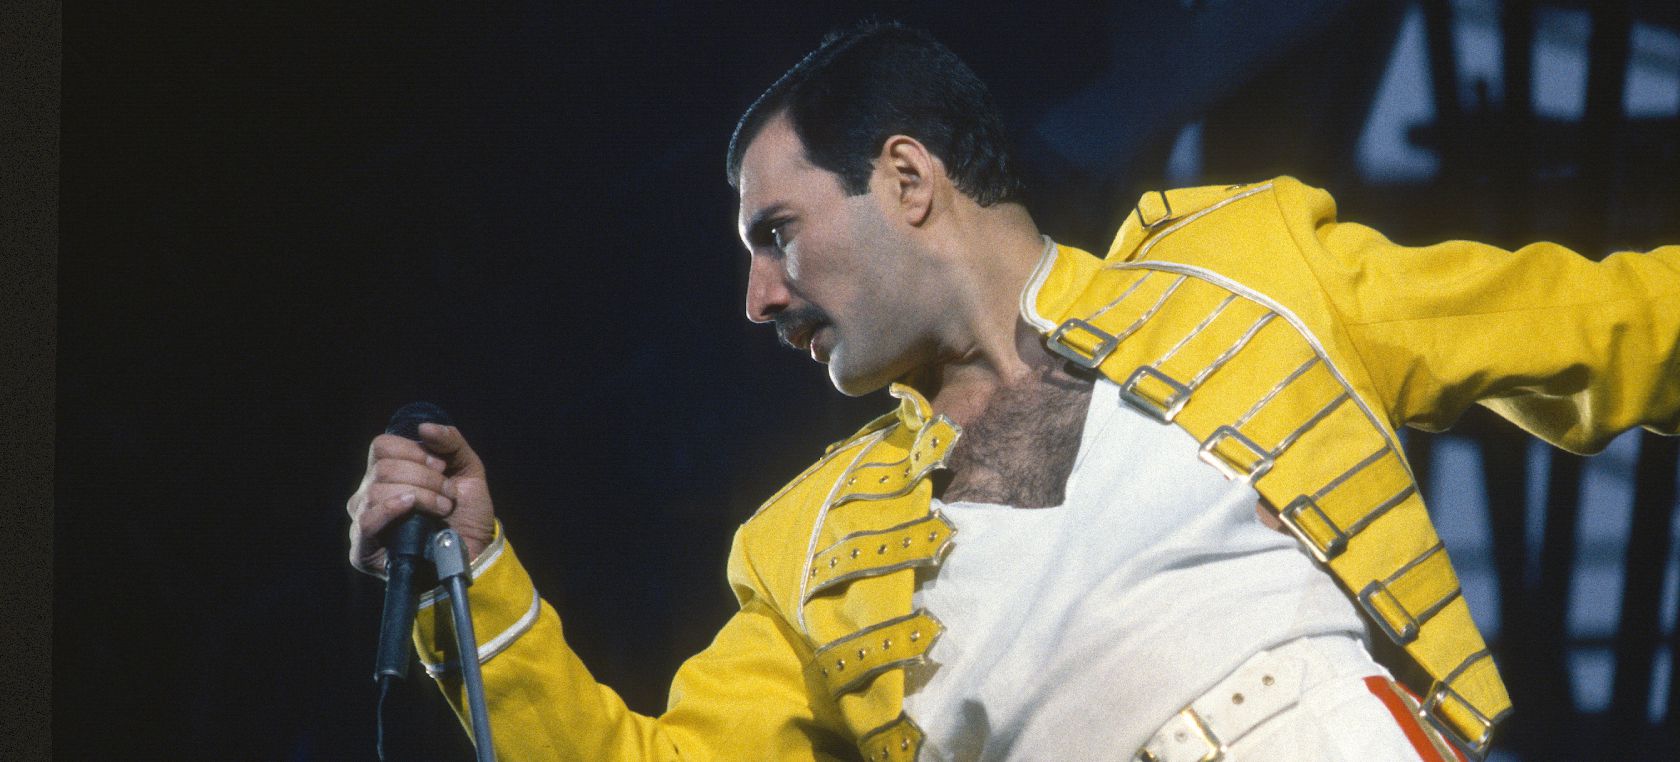 Queen lanza “Face It Alone”, una canción inédita con la voz de Freddie Mercury